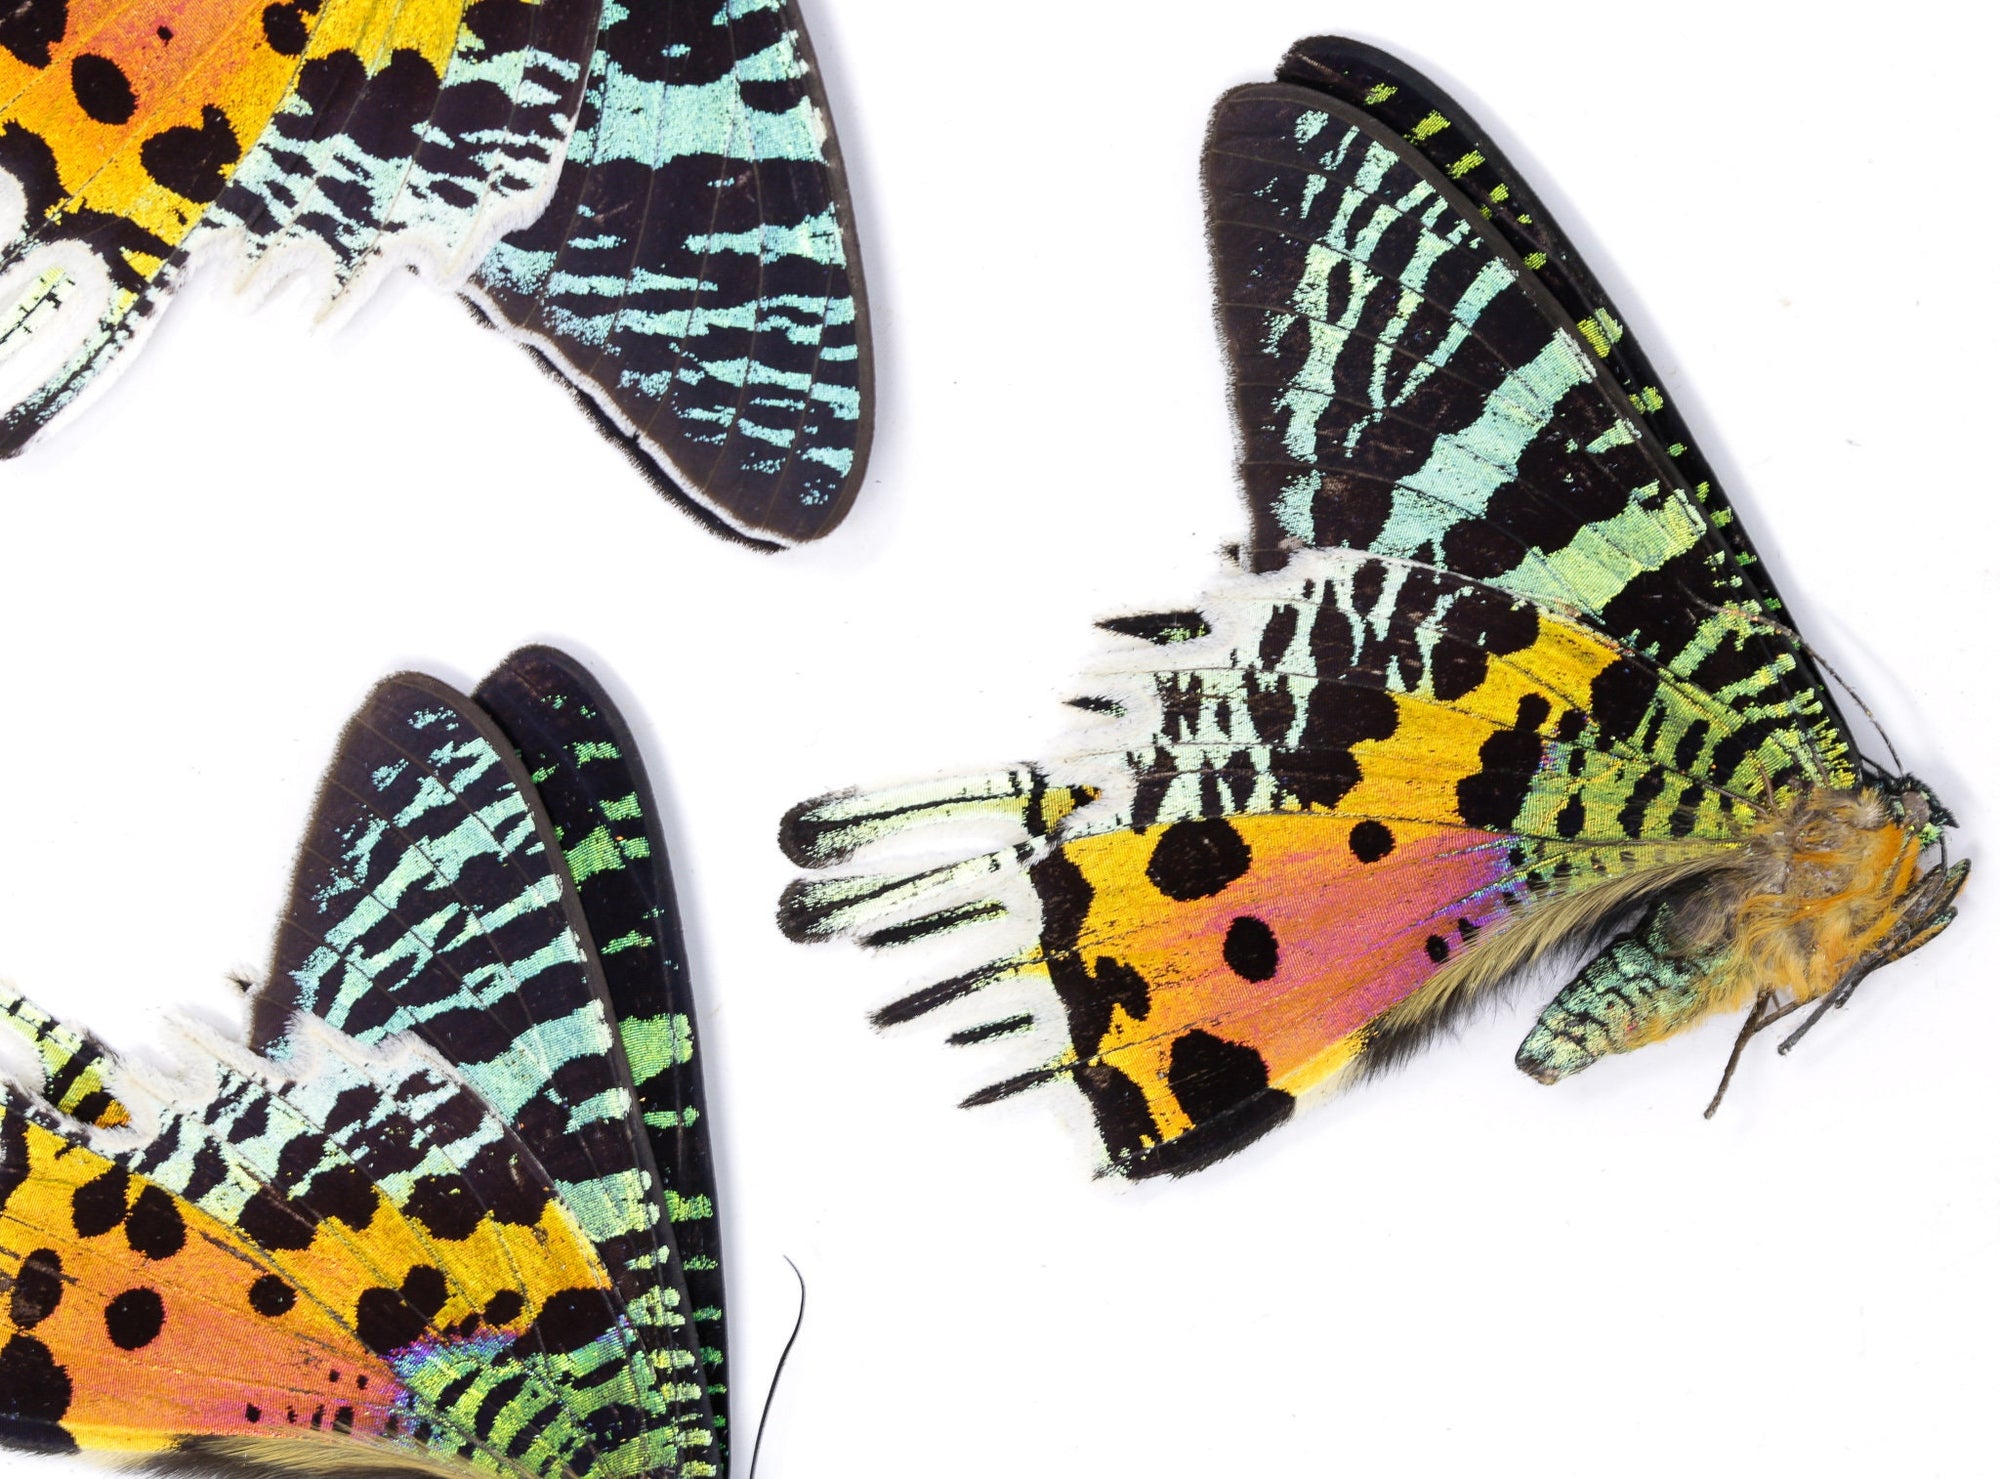 WHOLESALE 20 Madagascan Sunset Moths A2 Damaged specimens | Chrysiridia rhipheus | Unmounted Specimens